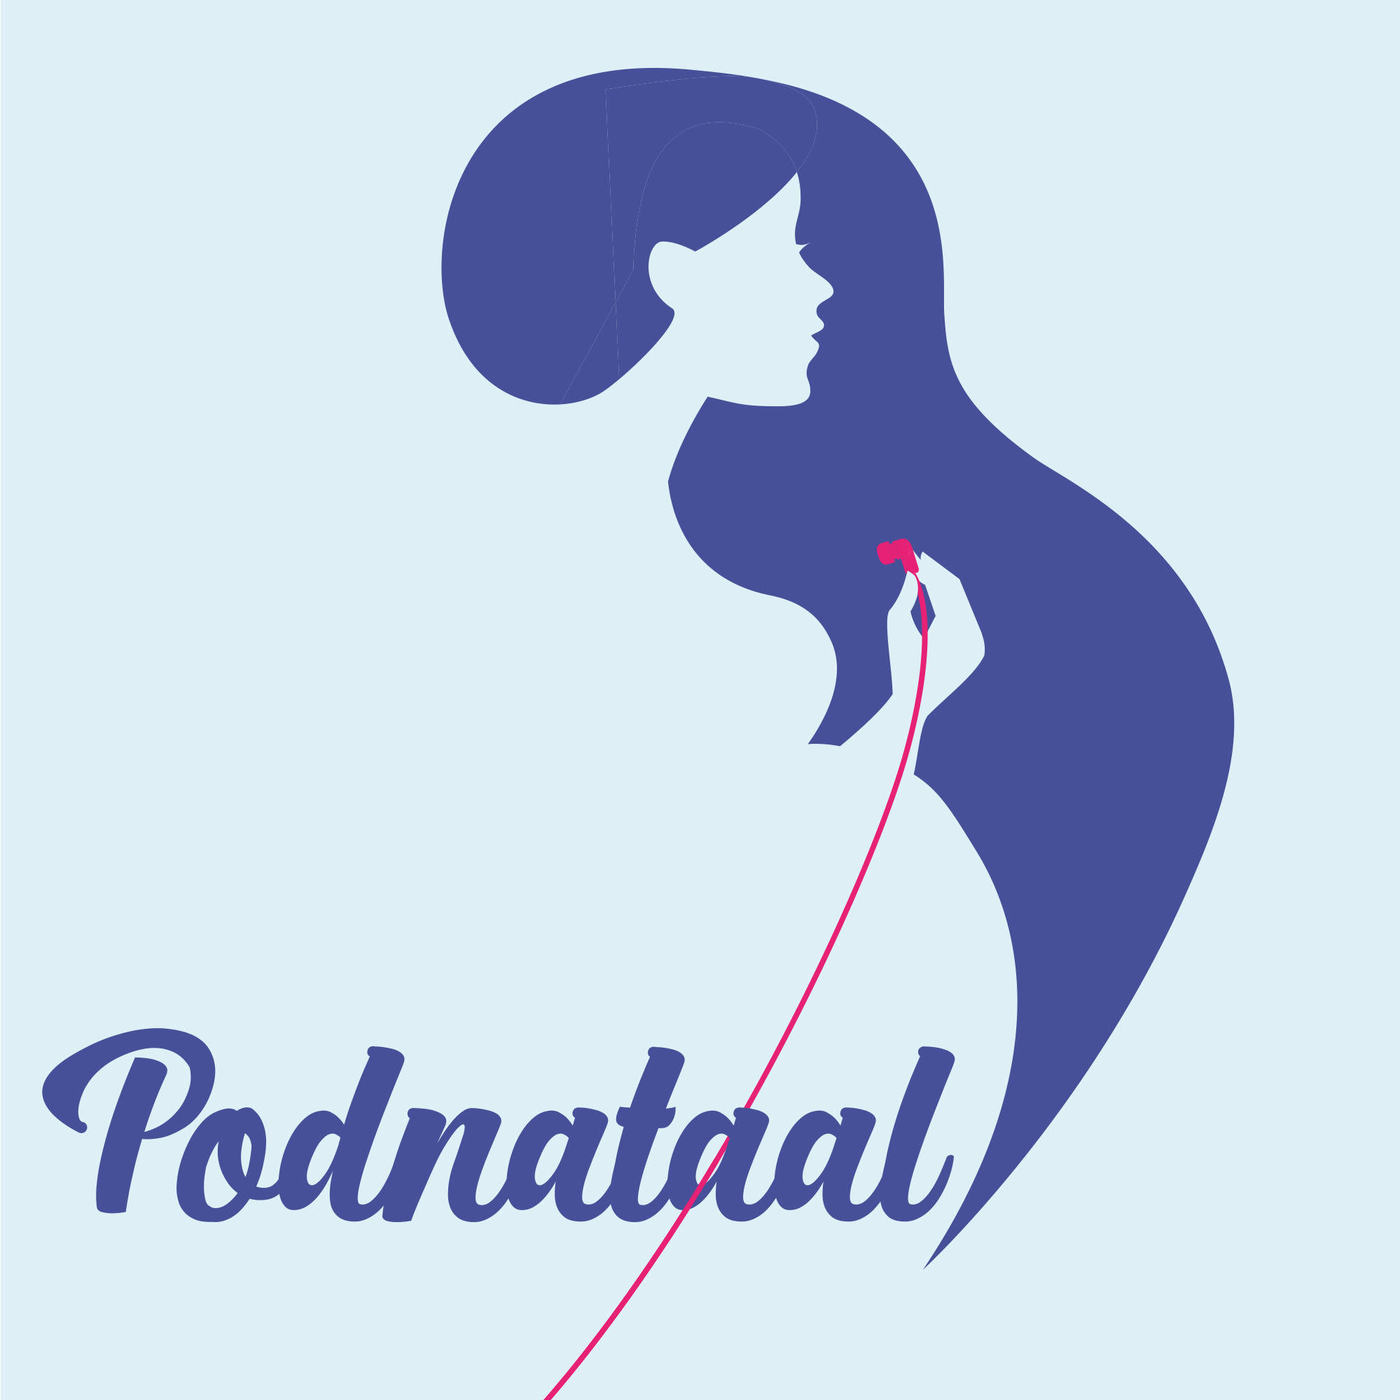 Podnataal logo